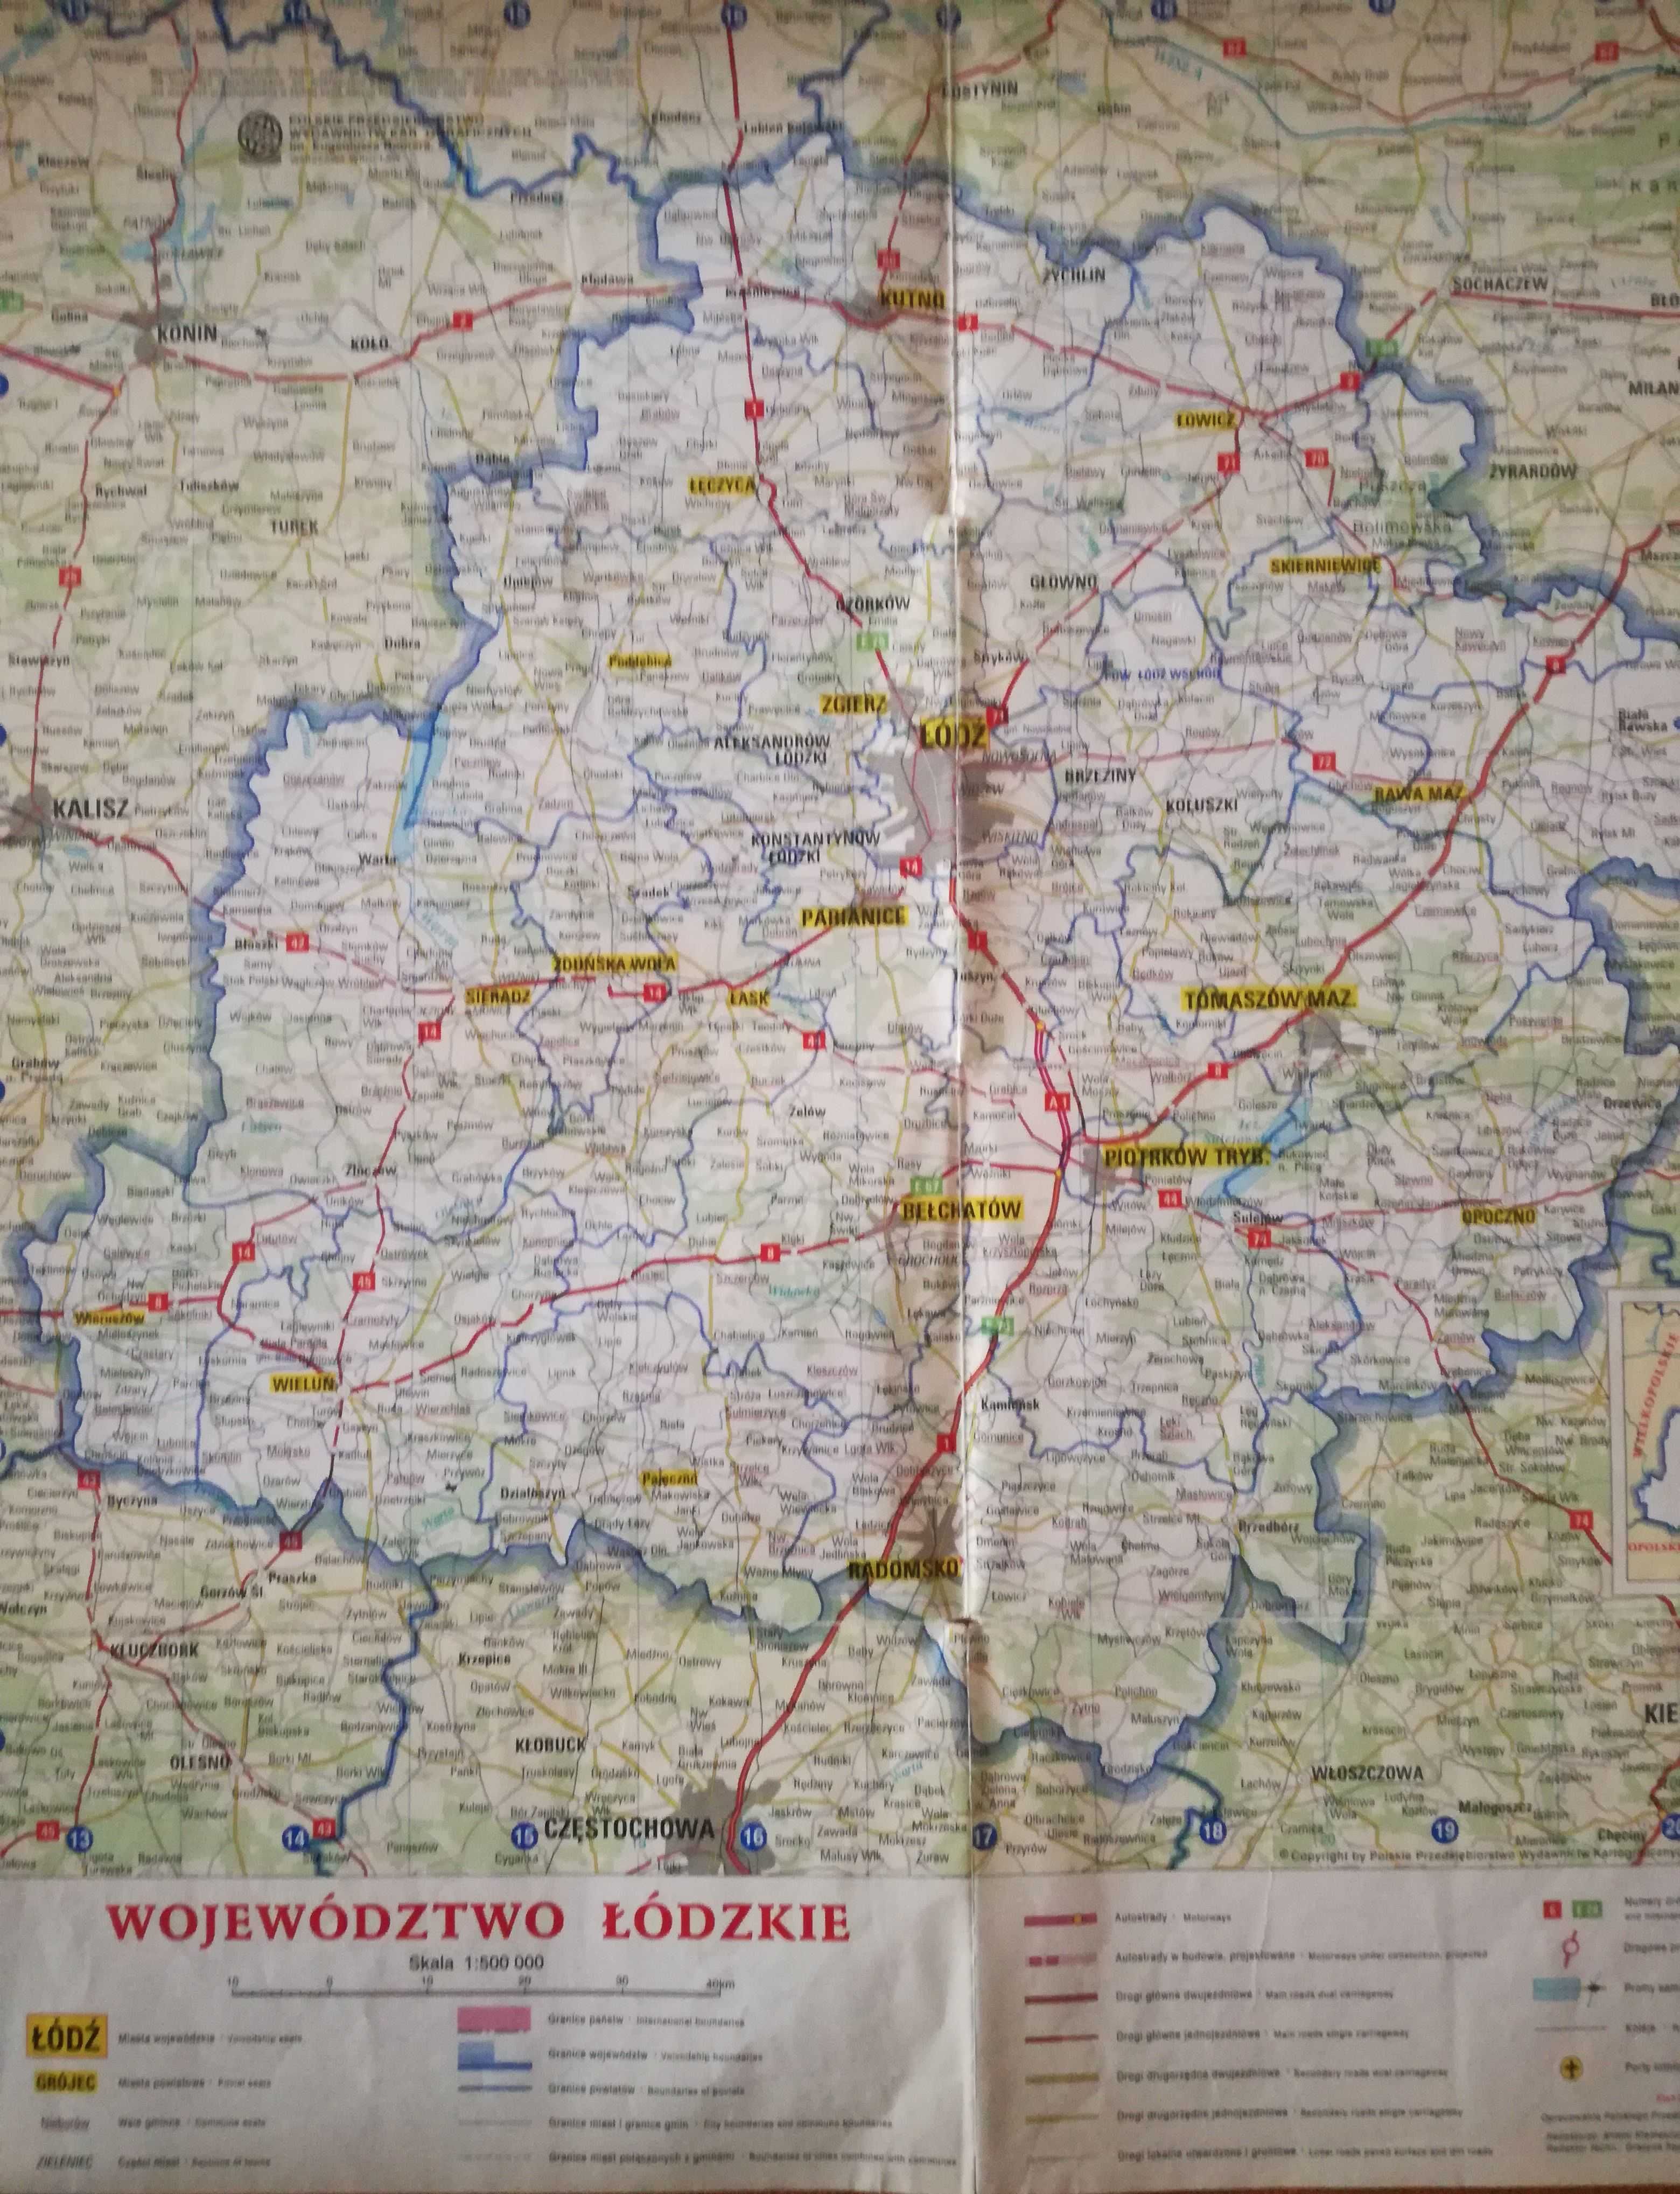 Mapa w skali 1:500000 województwo łódzkie.